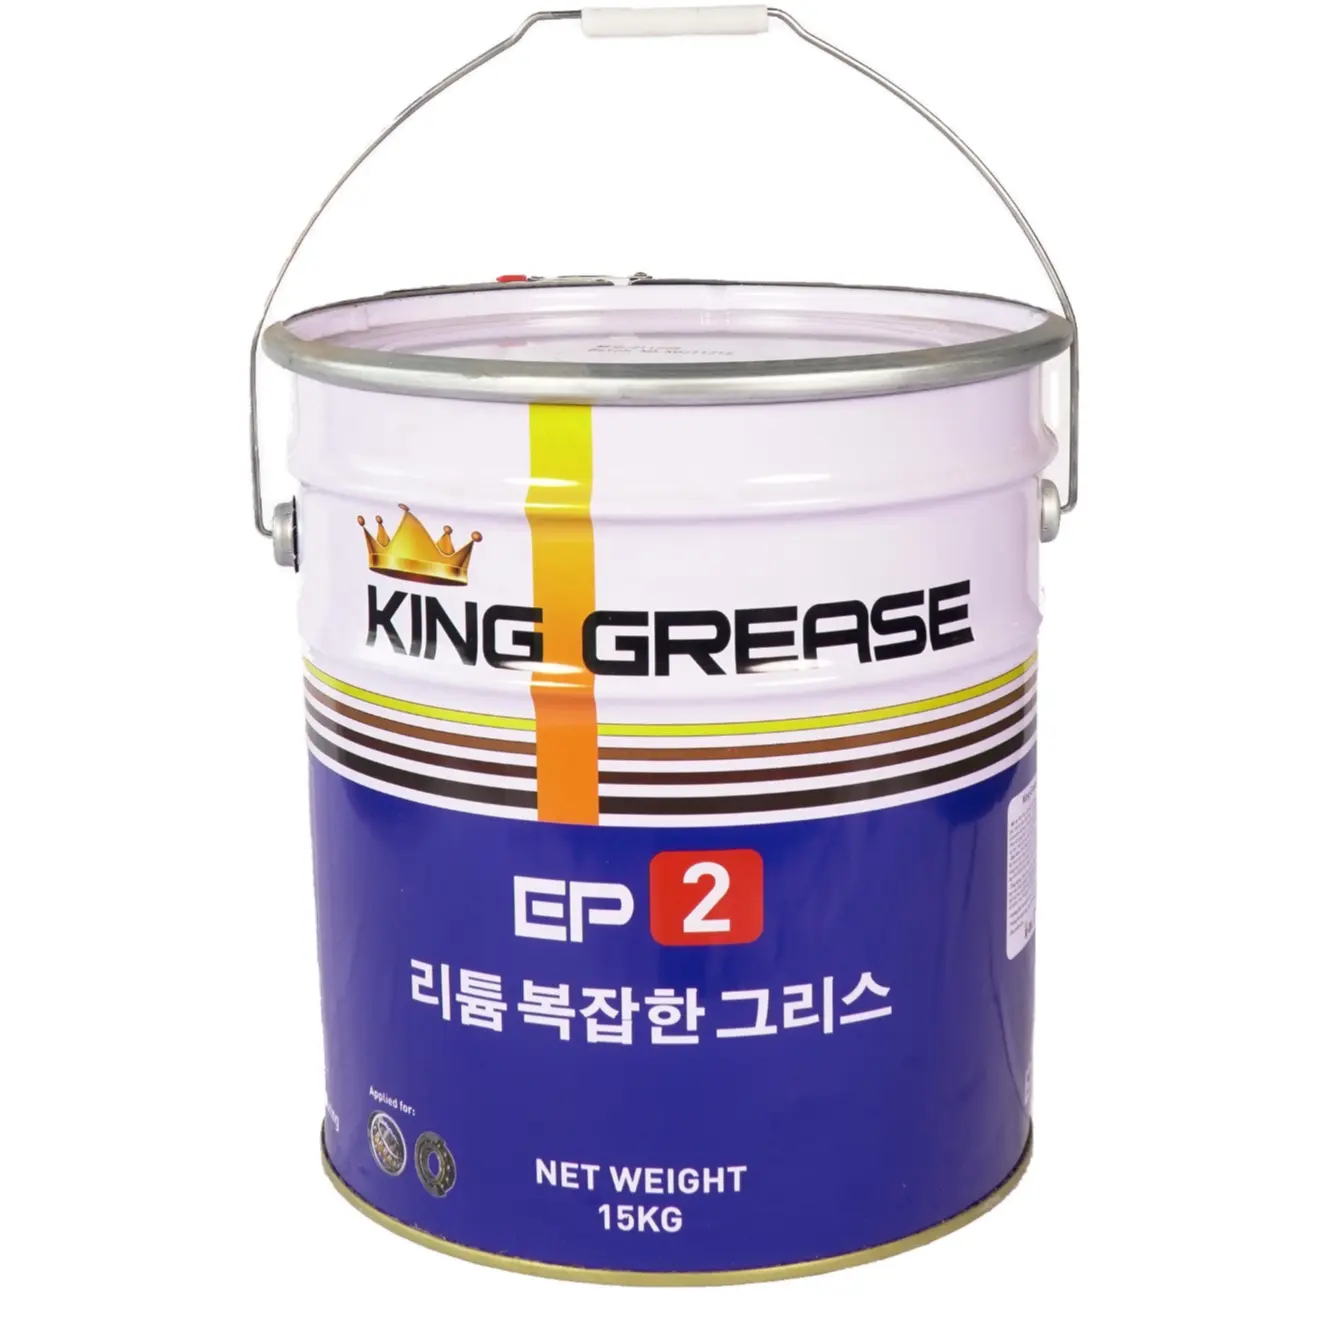 KING GREASE EP2 LITHIUM Fabricant vietnamien, anti-corrosion et lubrification en gros de la rotation. Graisse à base de lithium